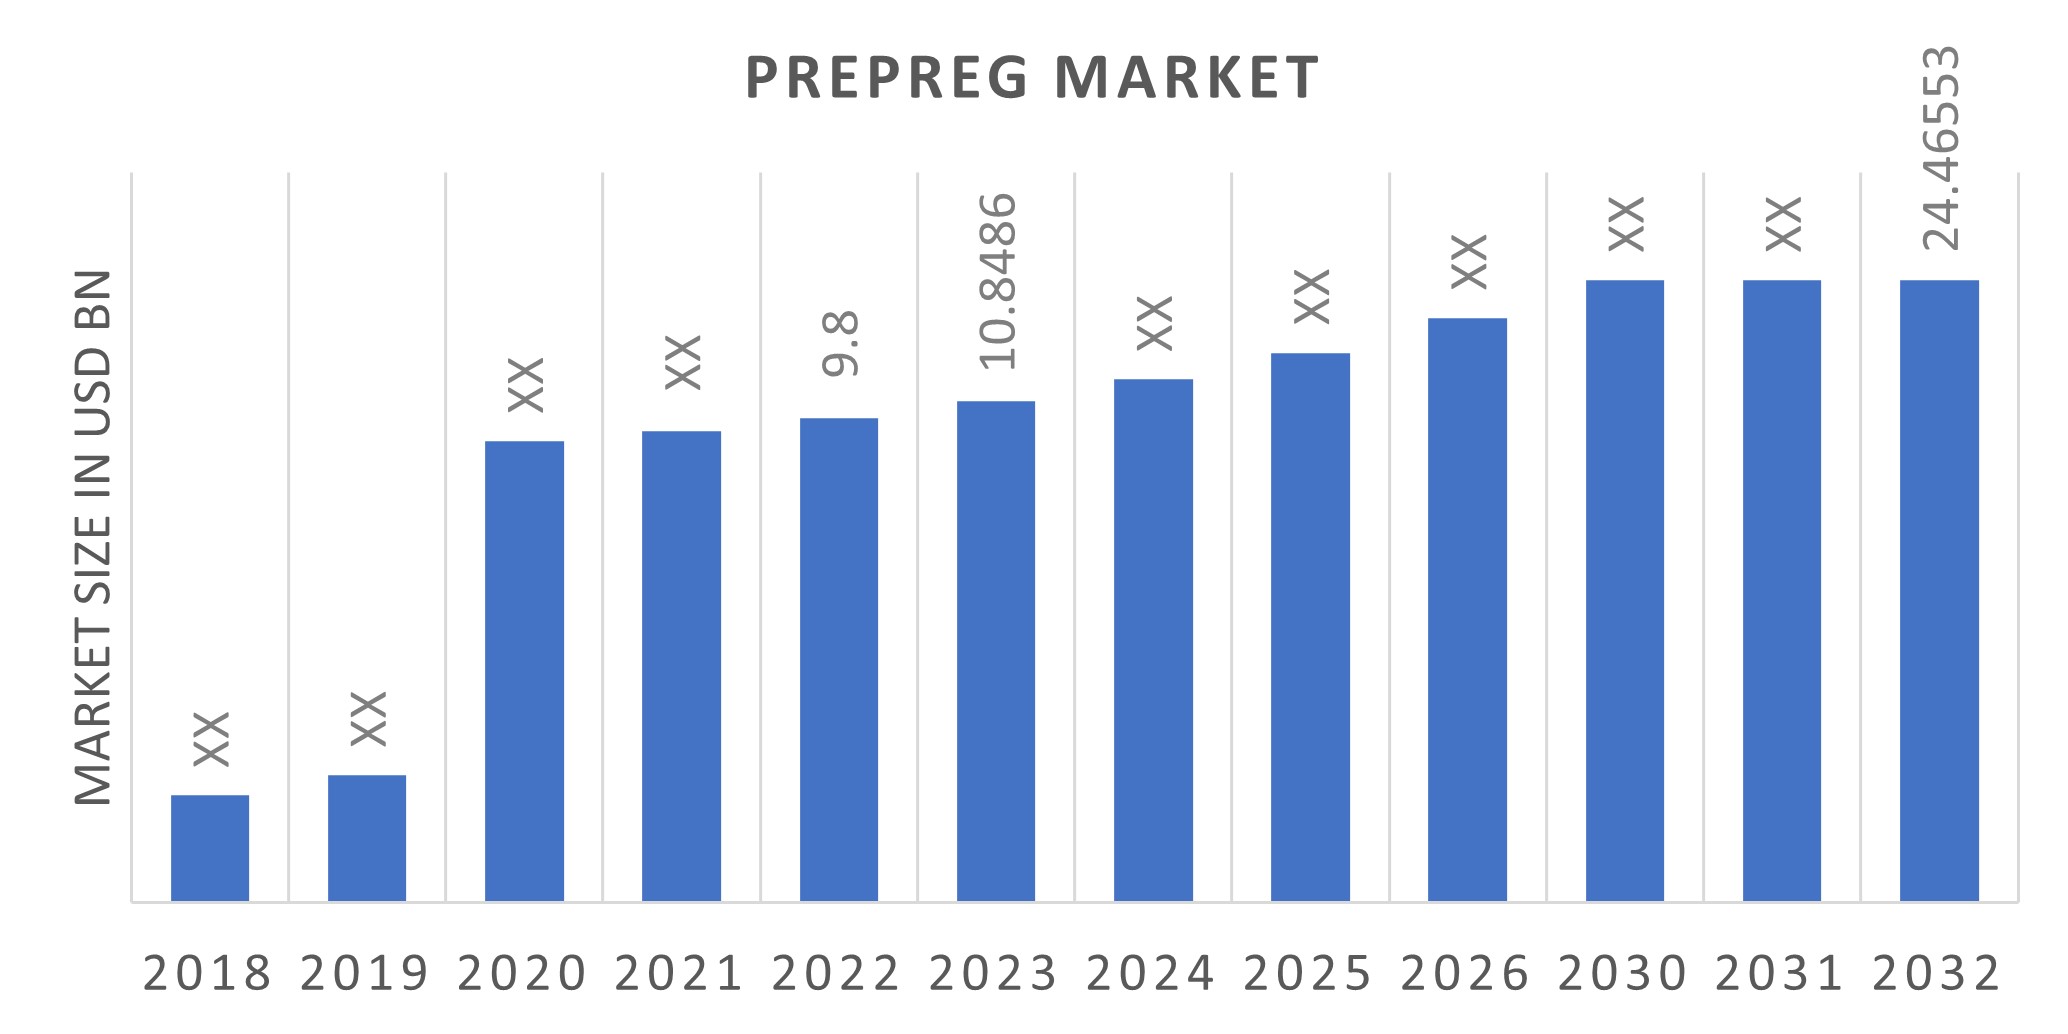 Global Prepreg Market